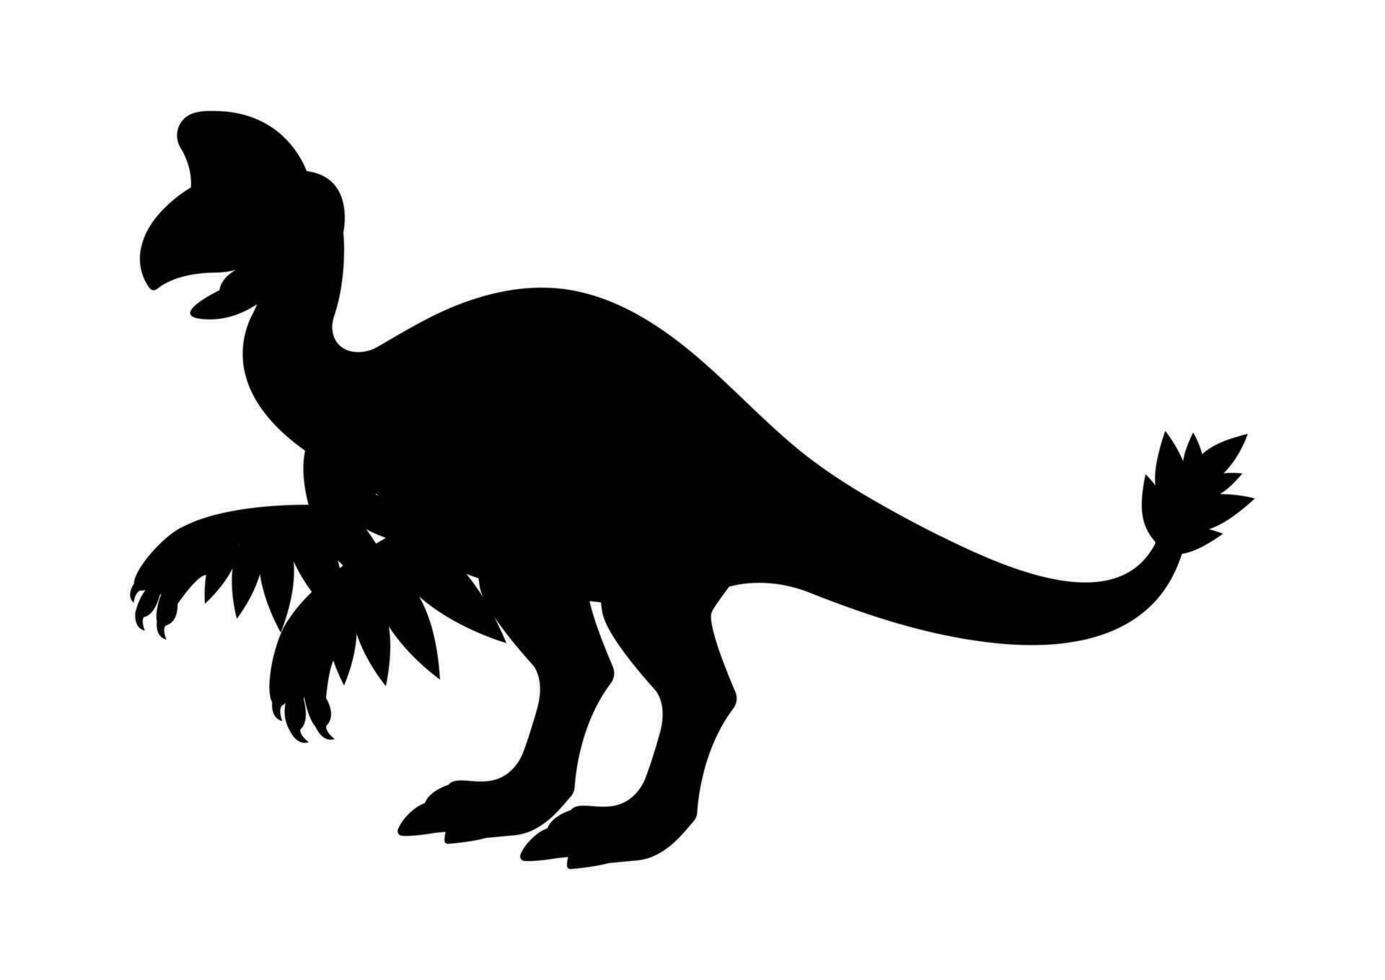 Oviraptorosaur Dinosaur Silhouette Vector Isolated on White Background